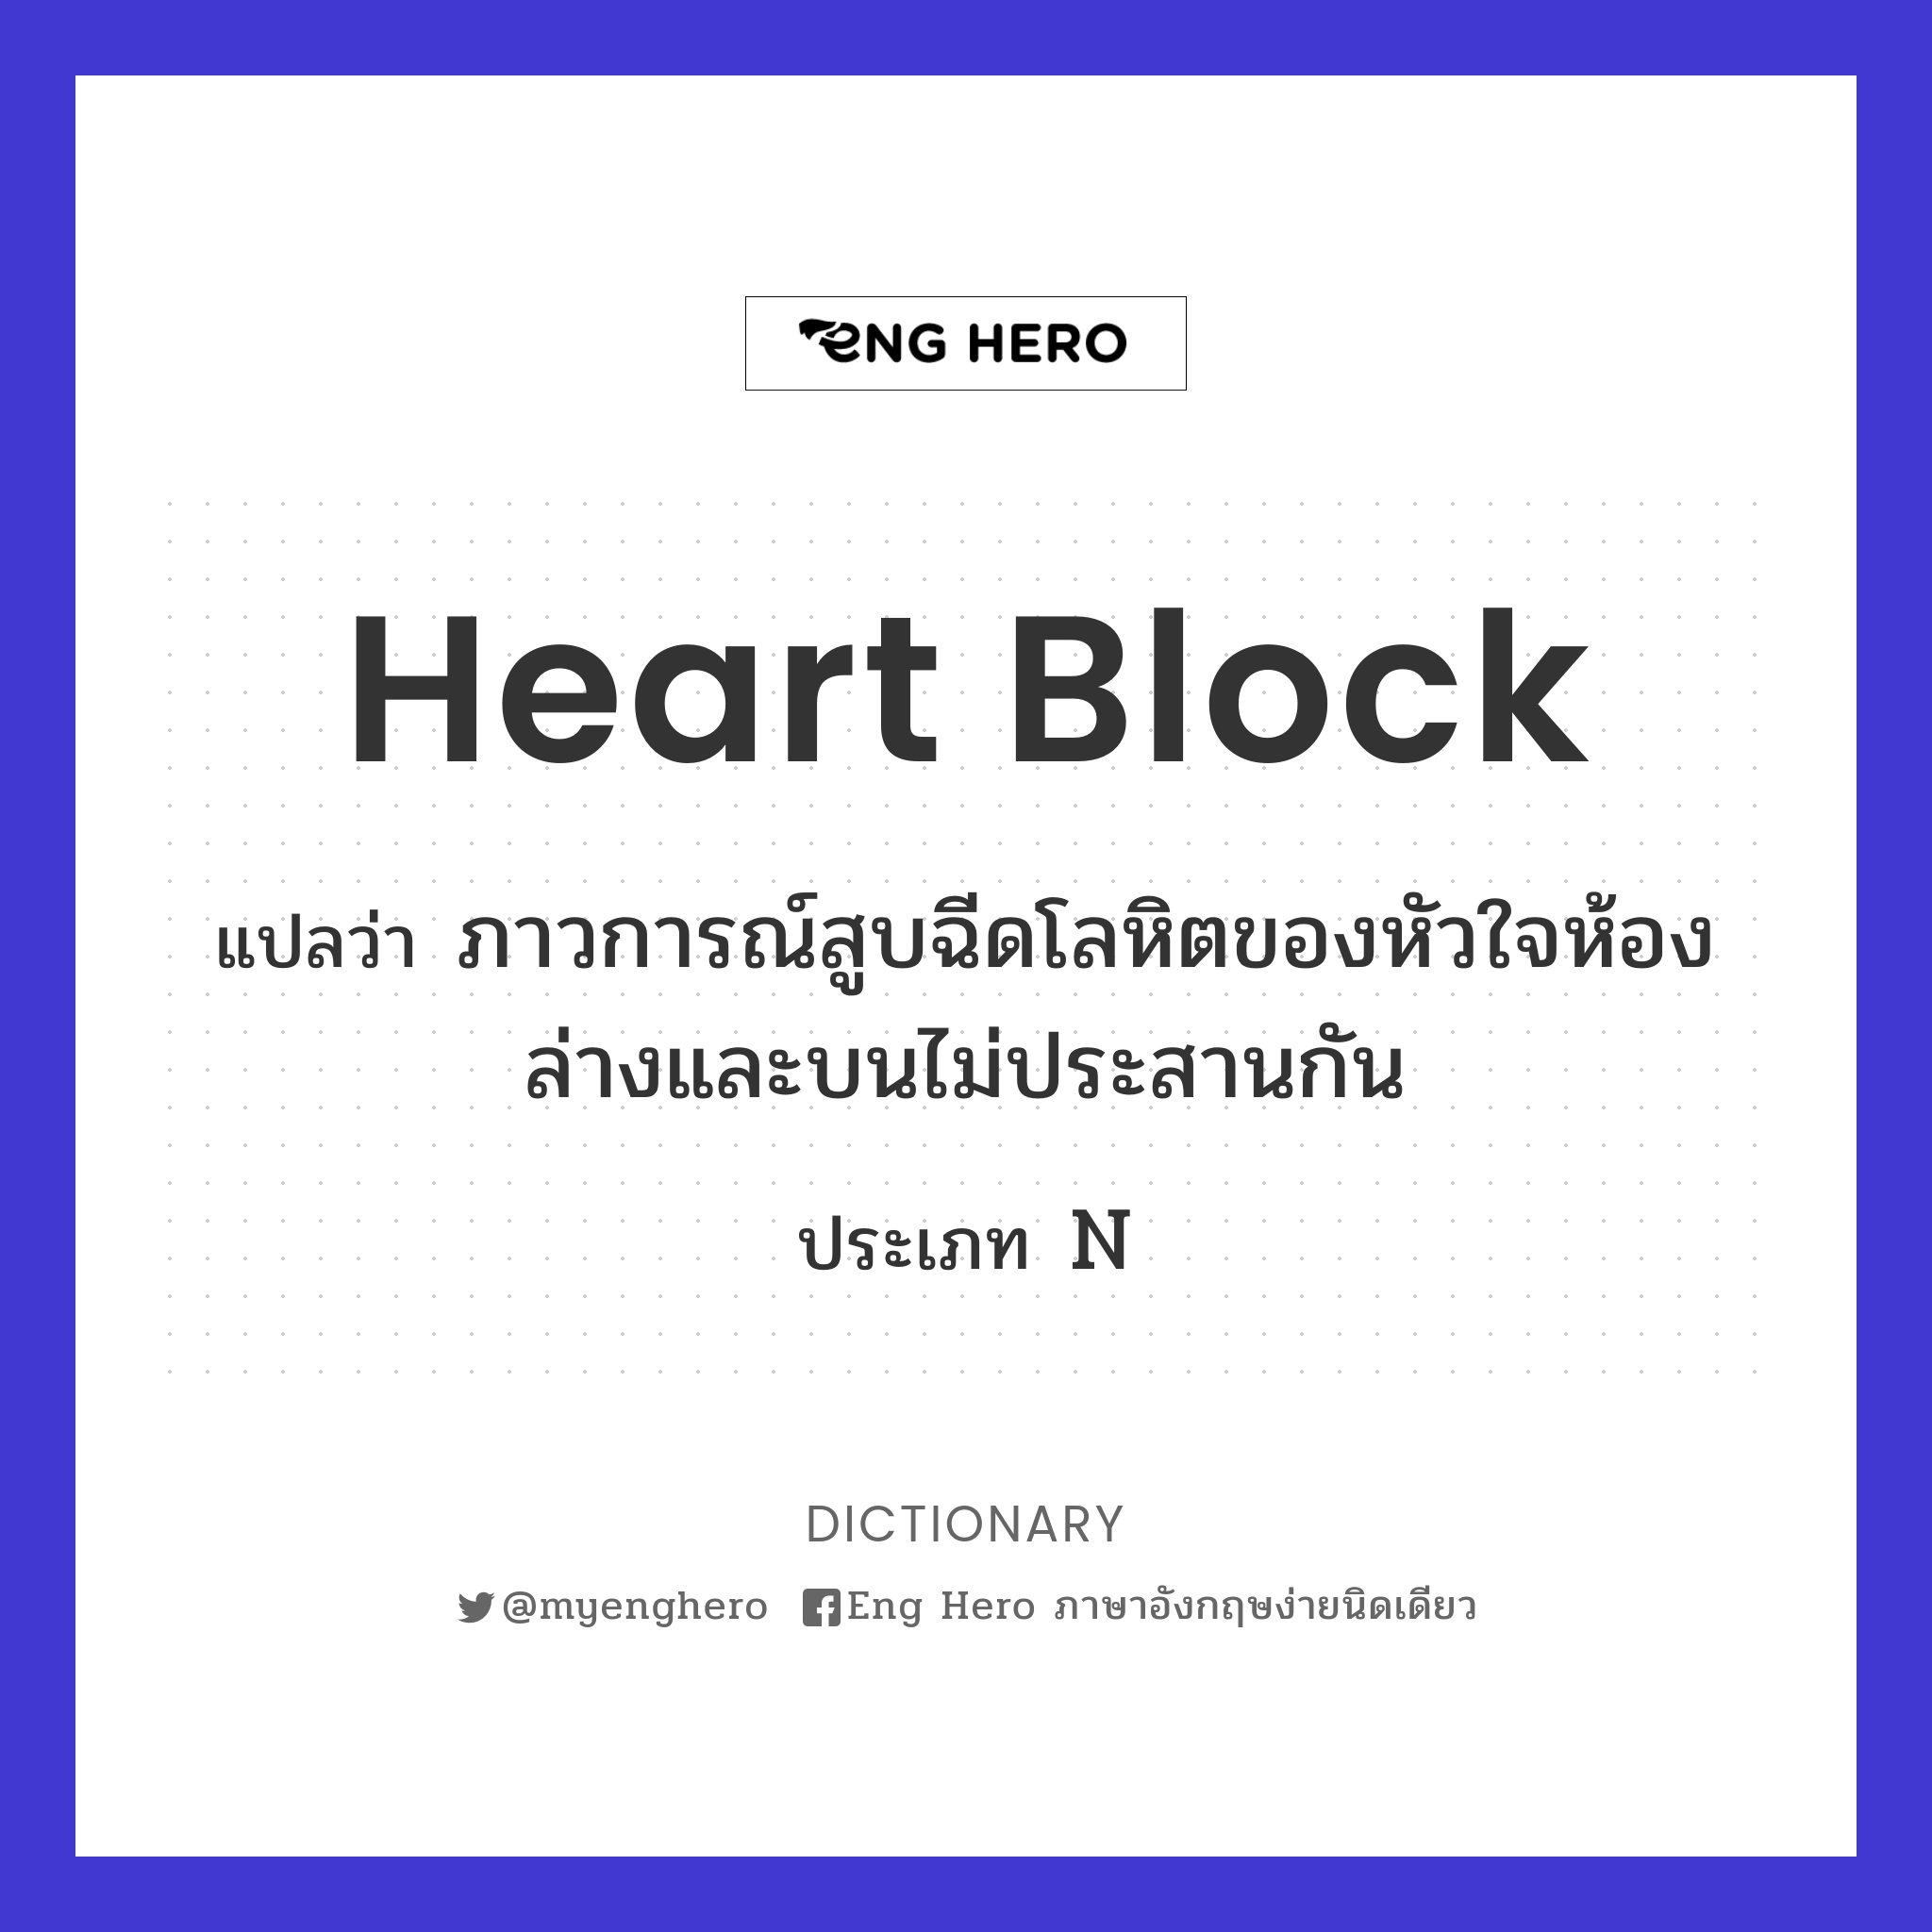 heart block